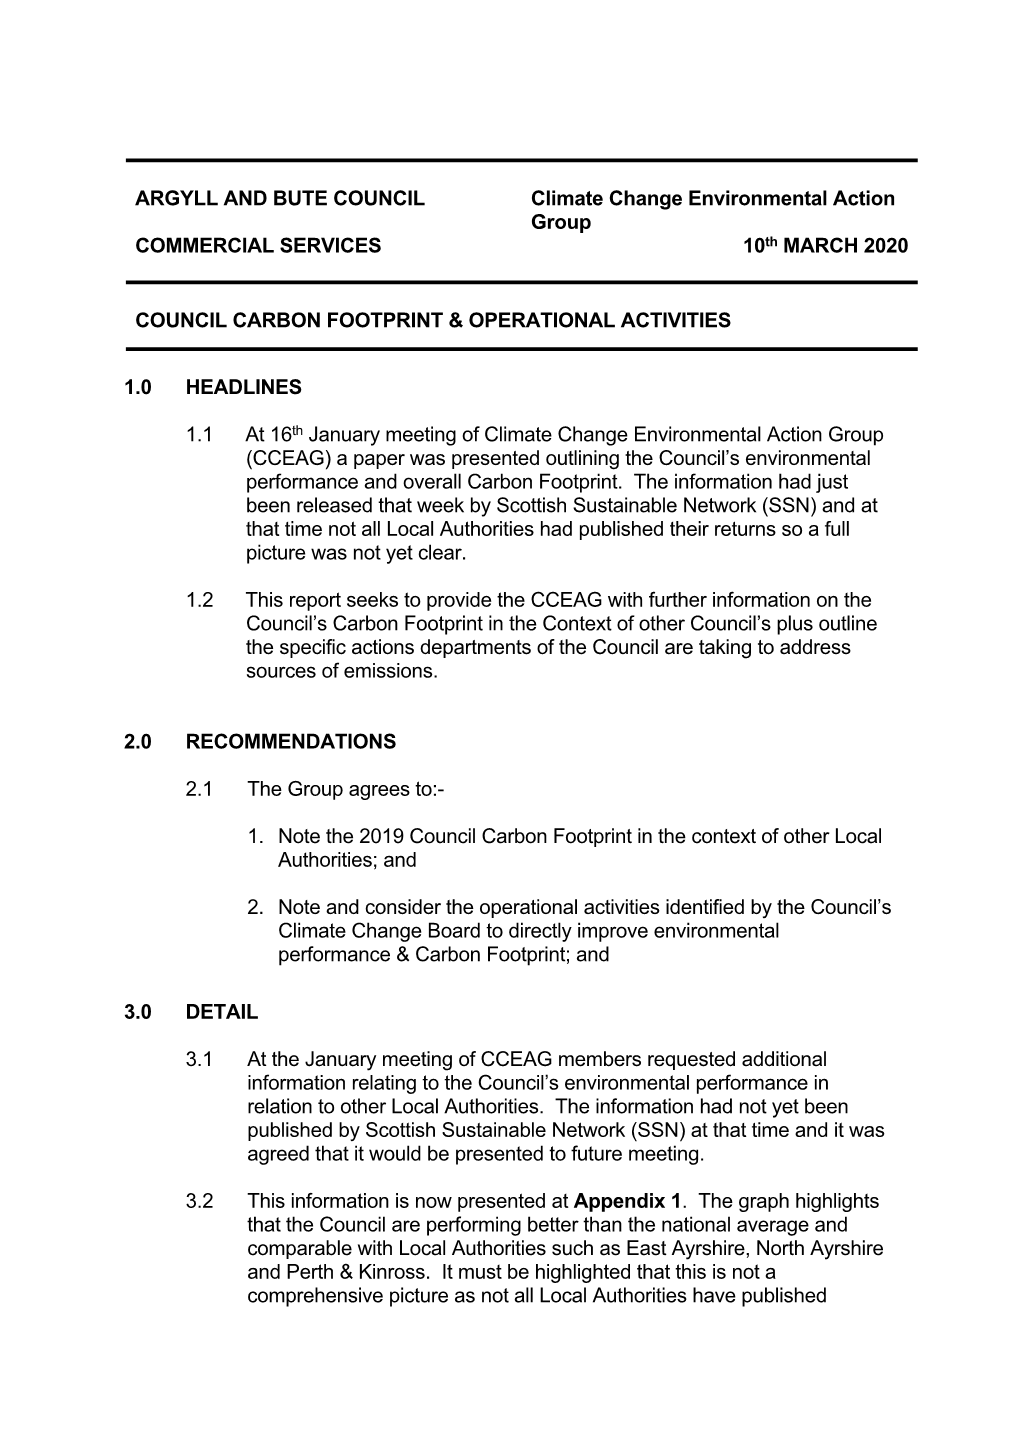 Council Carbon Footprint & Operational Activities PDF 131 KB